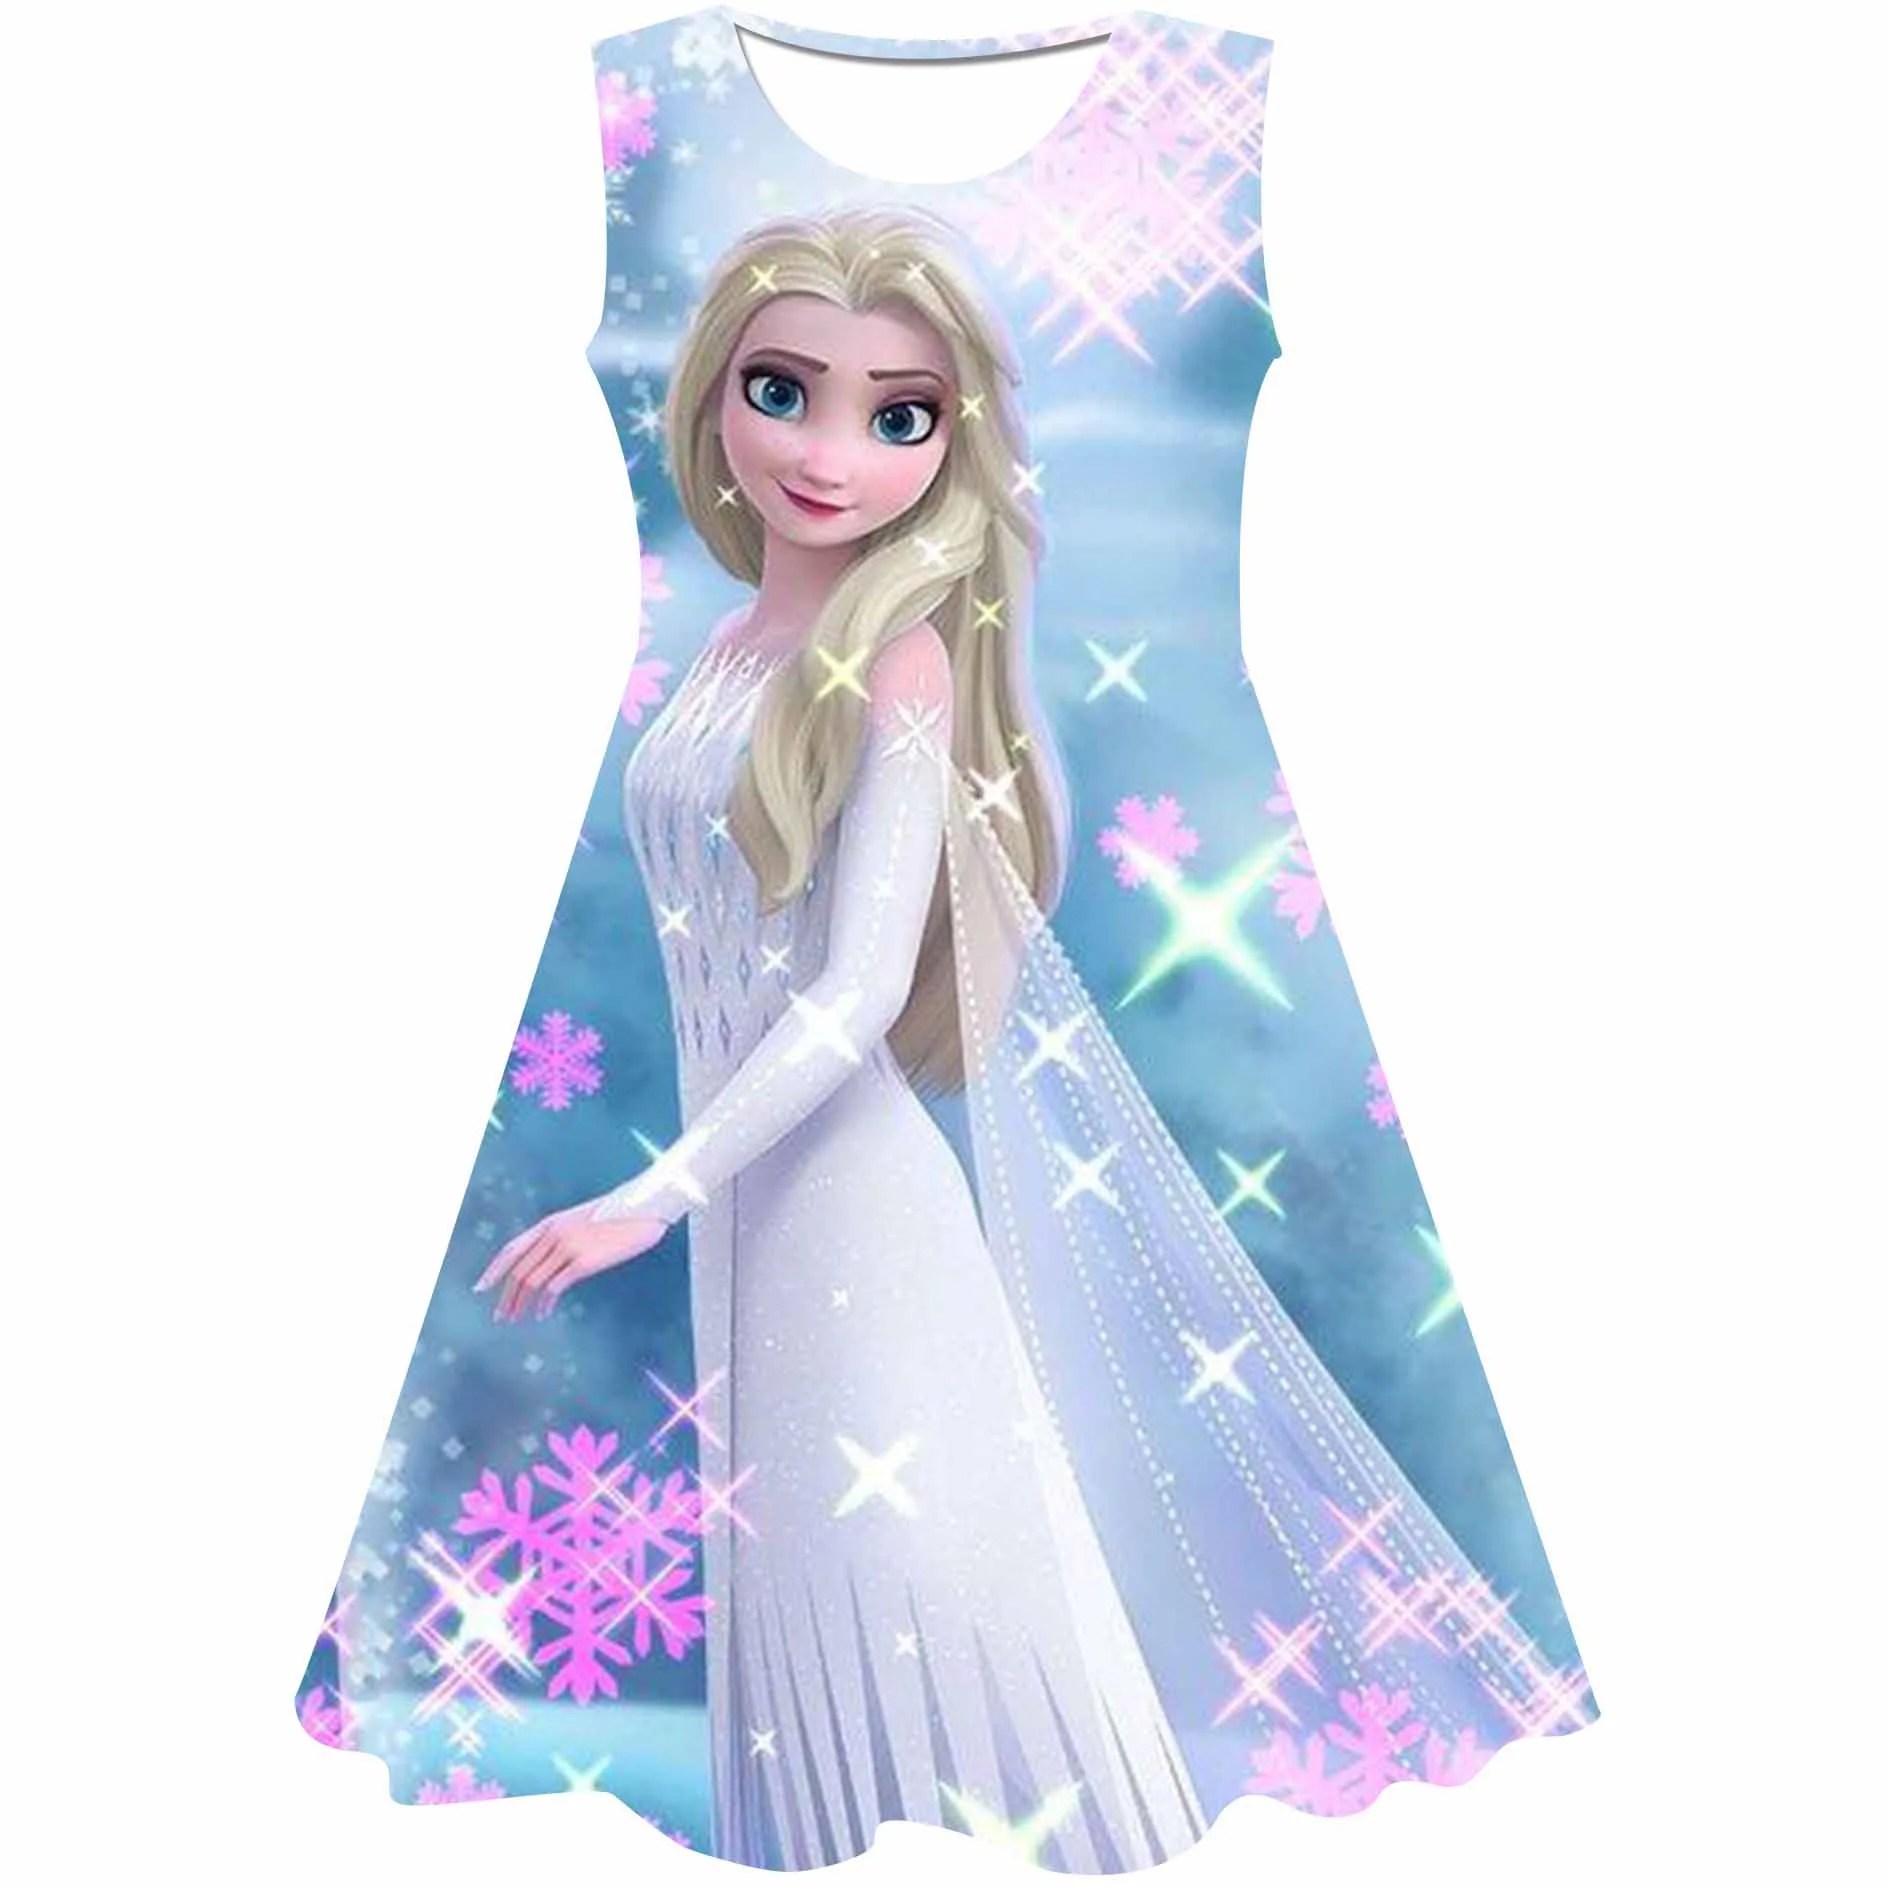 Tanie Elsa sukienki dla dziewczynek księżniczka Party Elsa kostium królowa śniegu